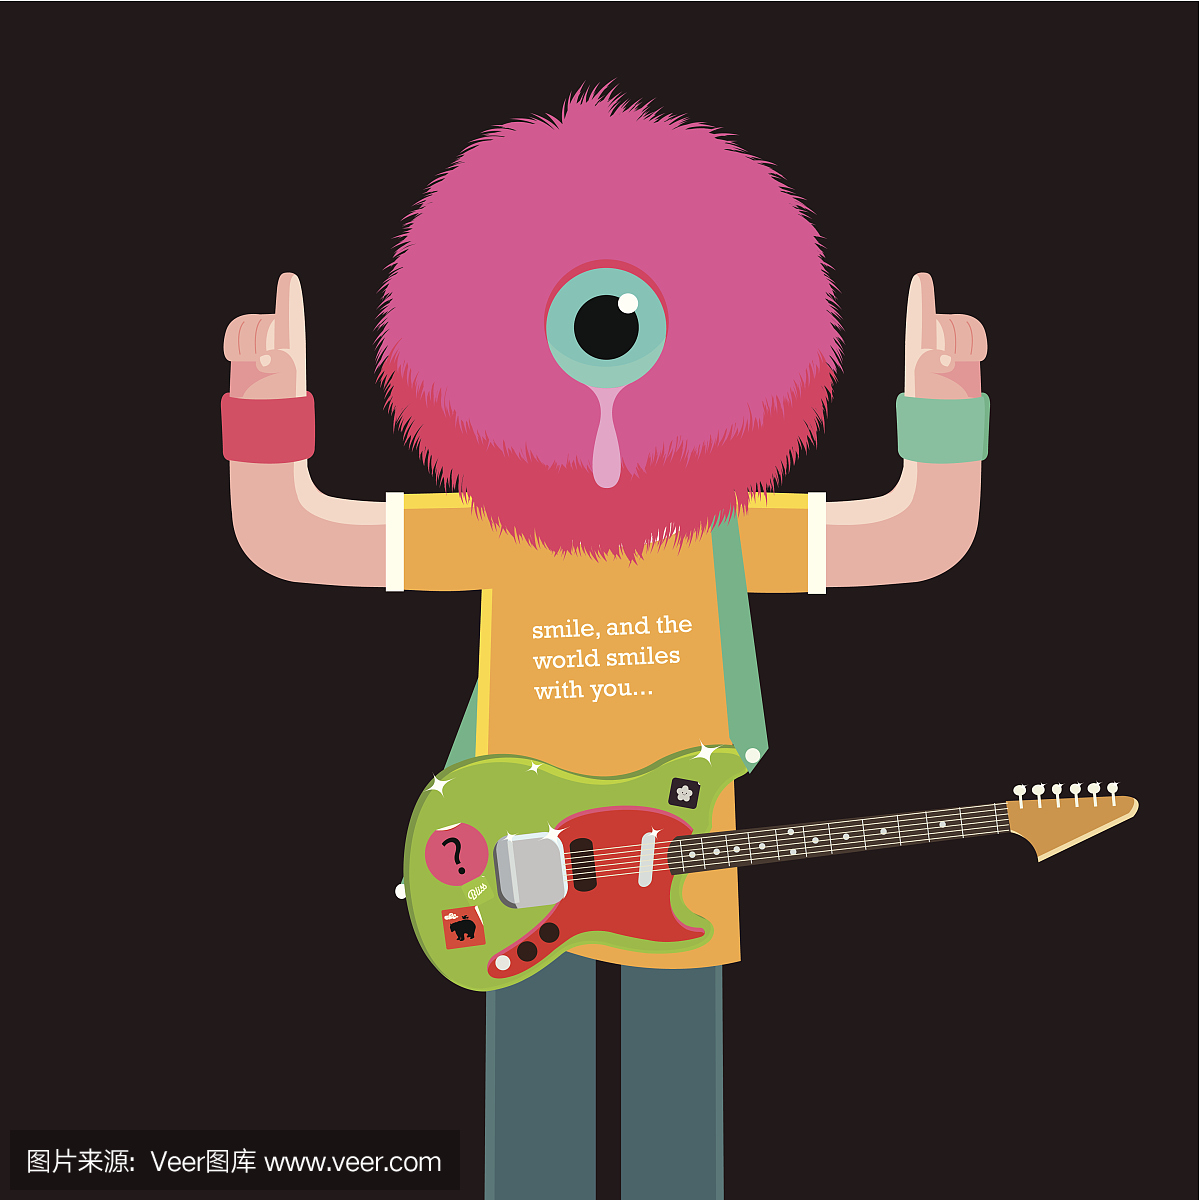 一只眼睛的绒毛球吉他手人物插图